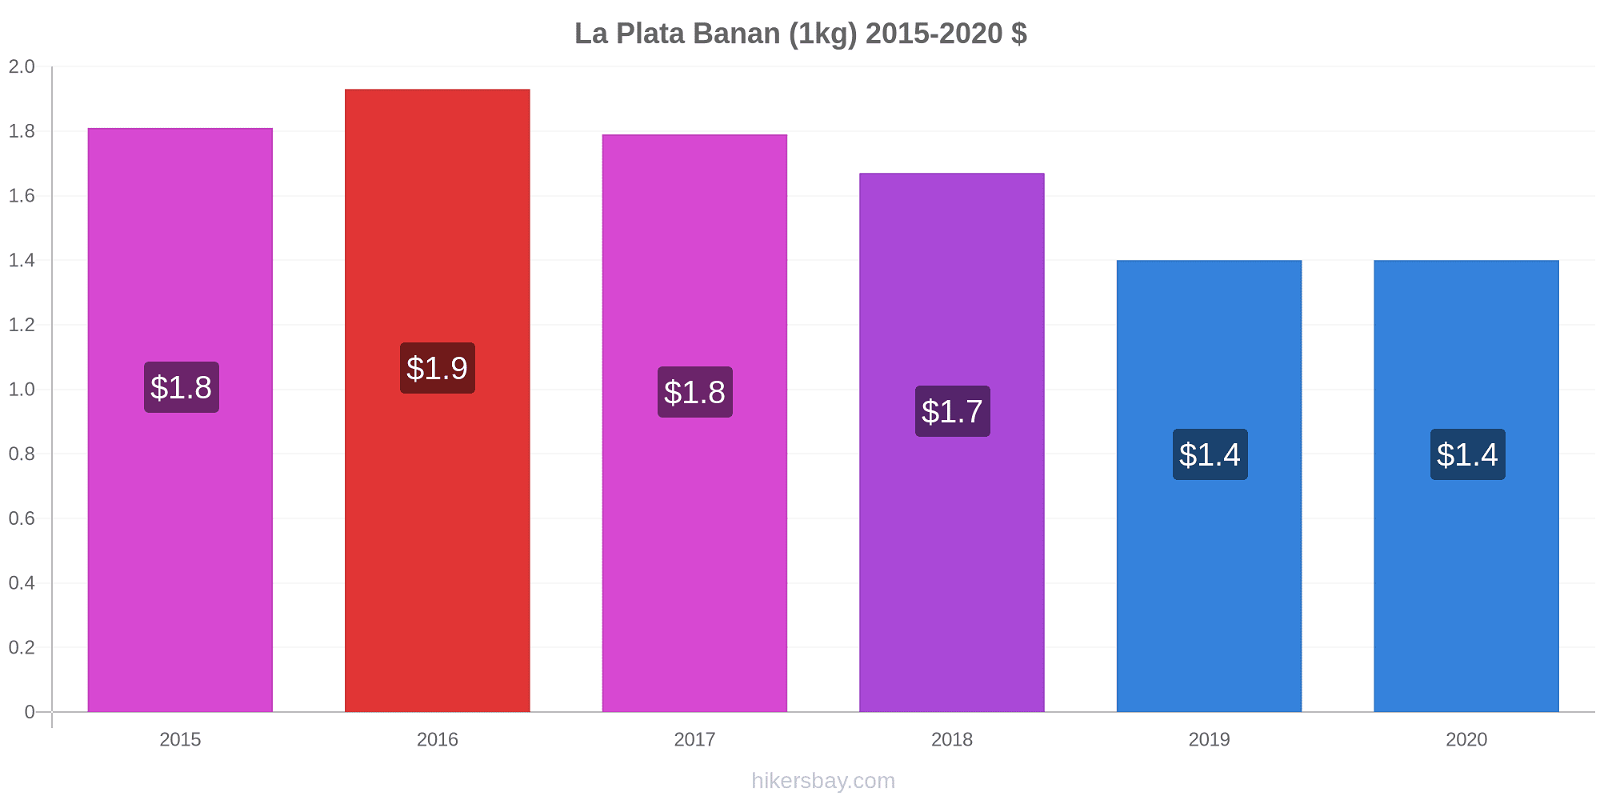 La Plata prisændringer Banan (1kg) hikersbay.com